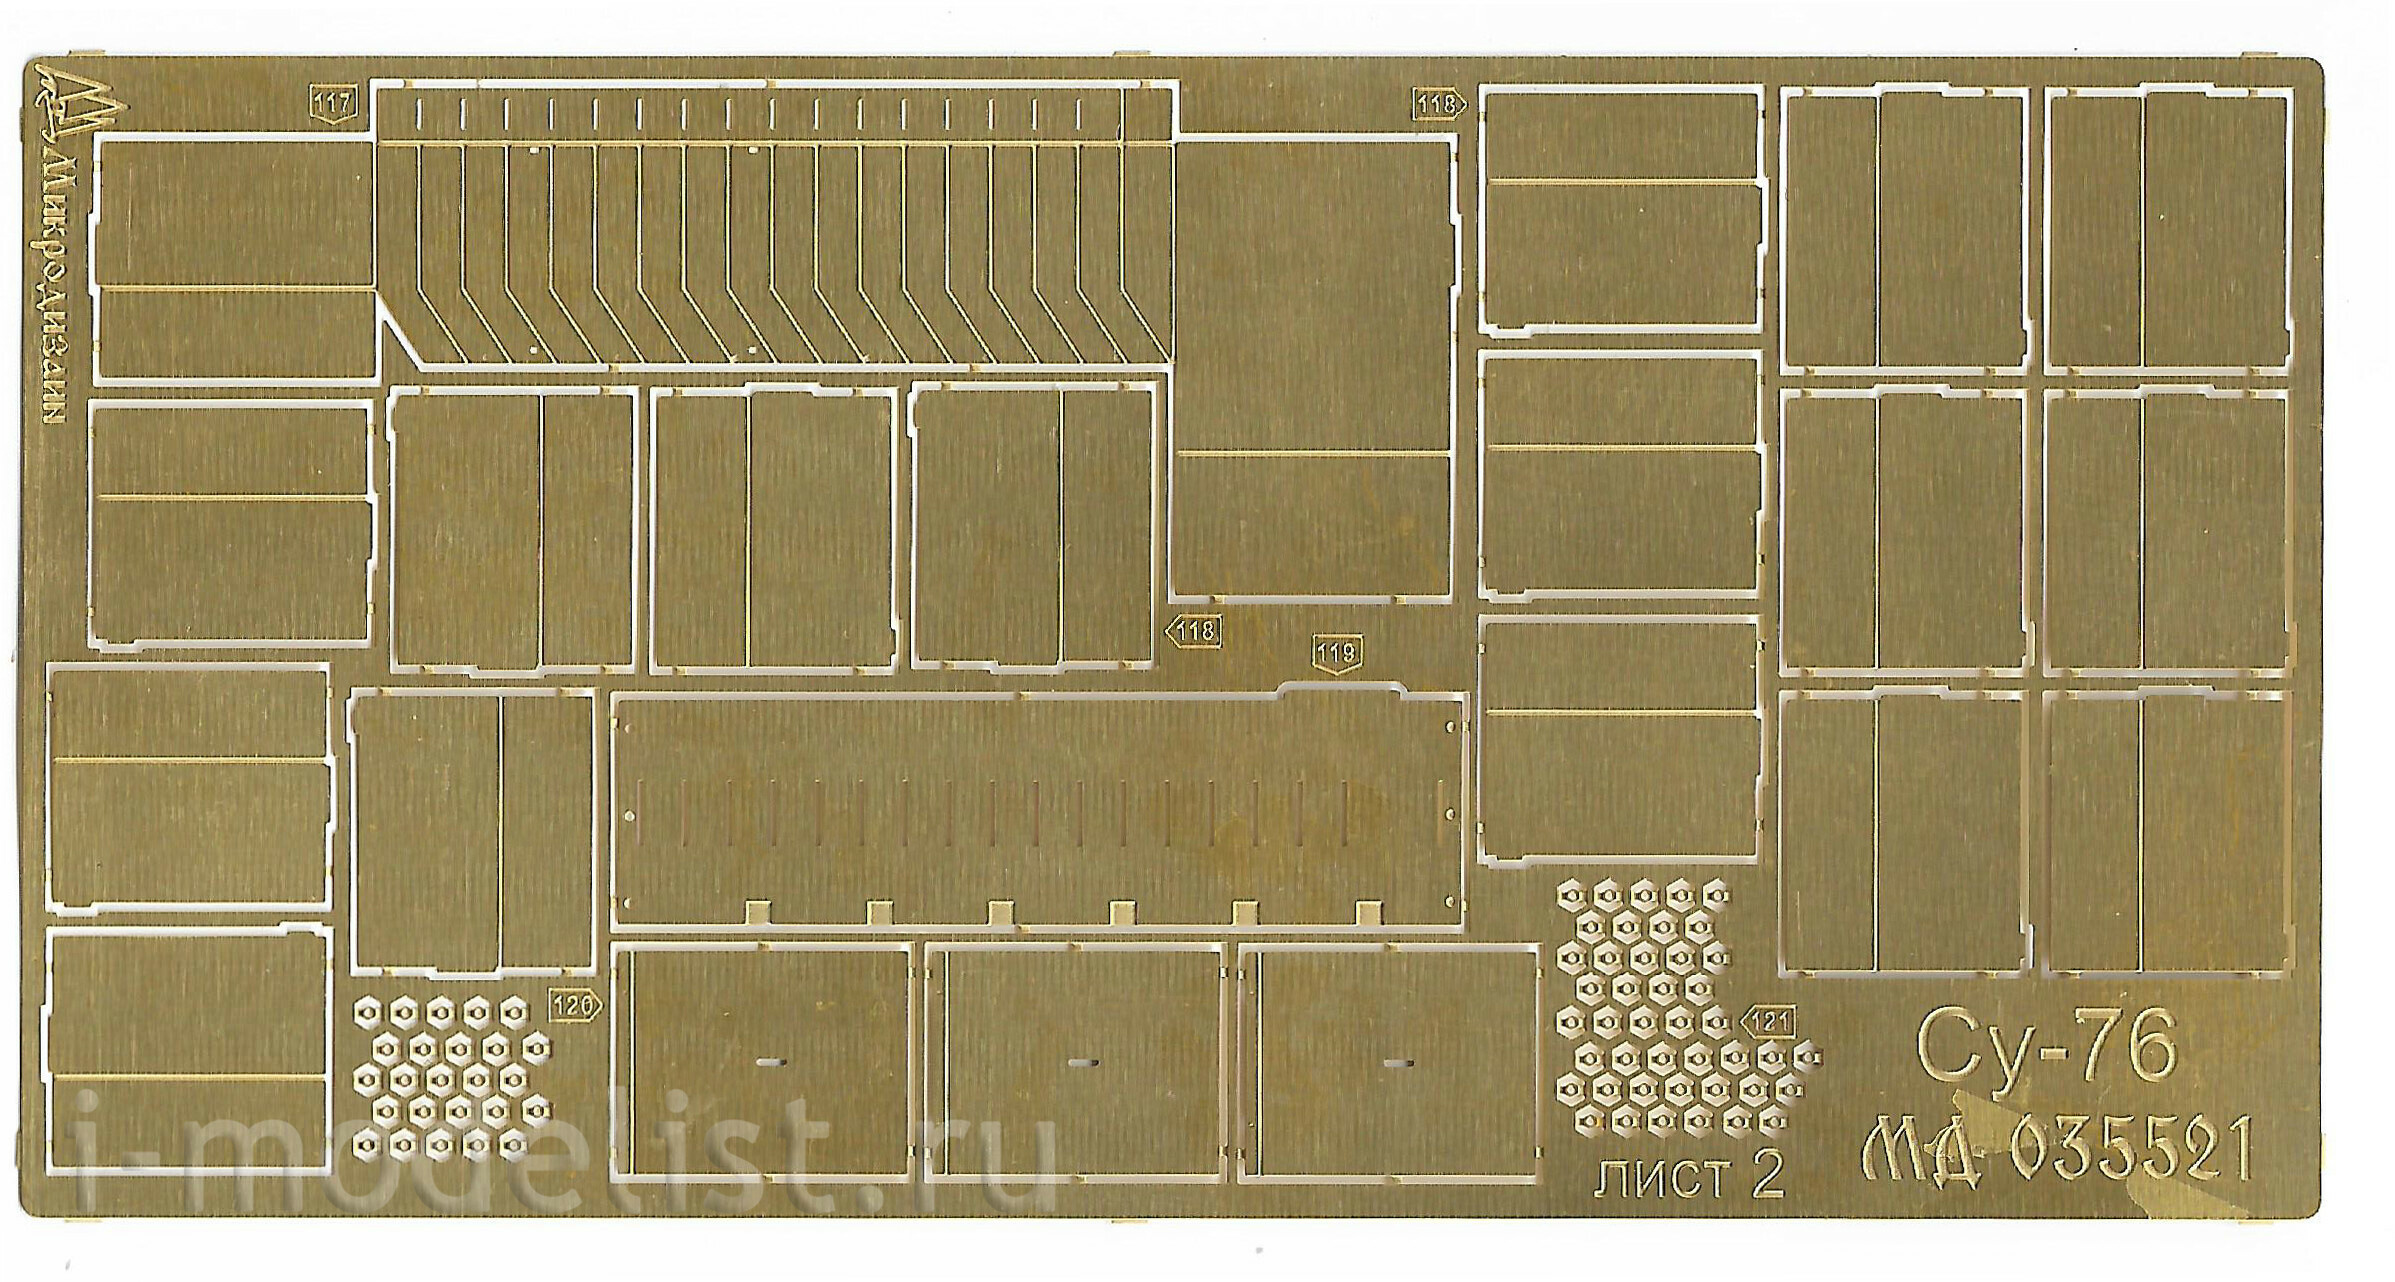 035521 Микродизайн 1/35 Базовый набор для СУ-76 (Звезда)